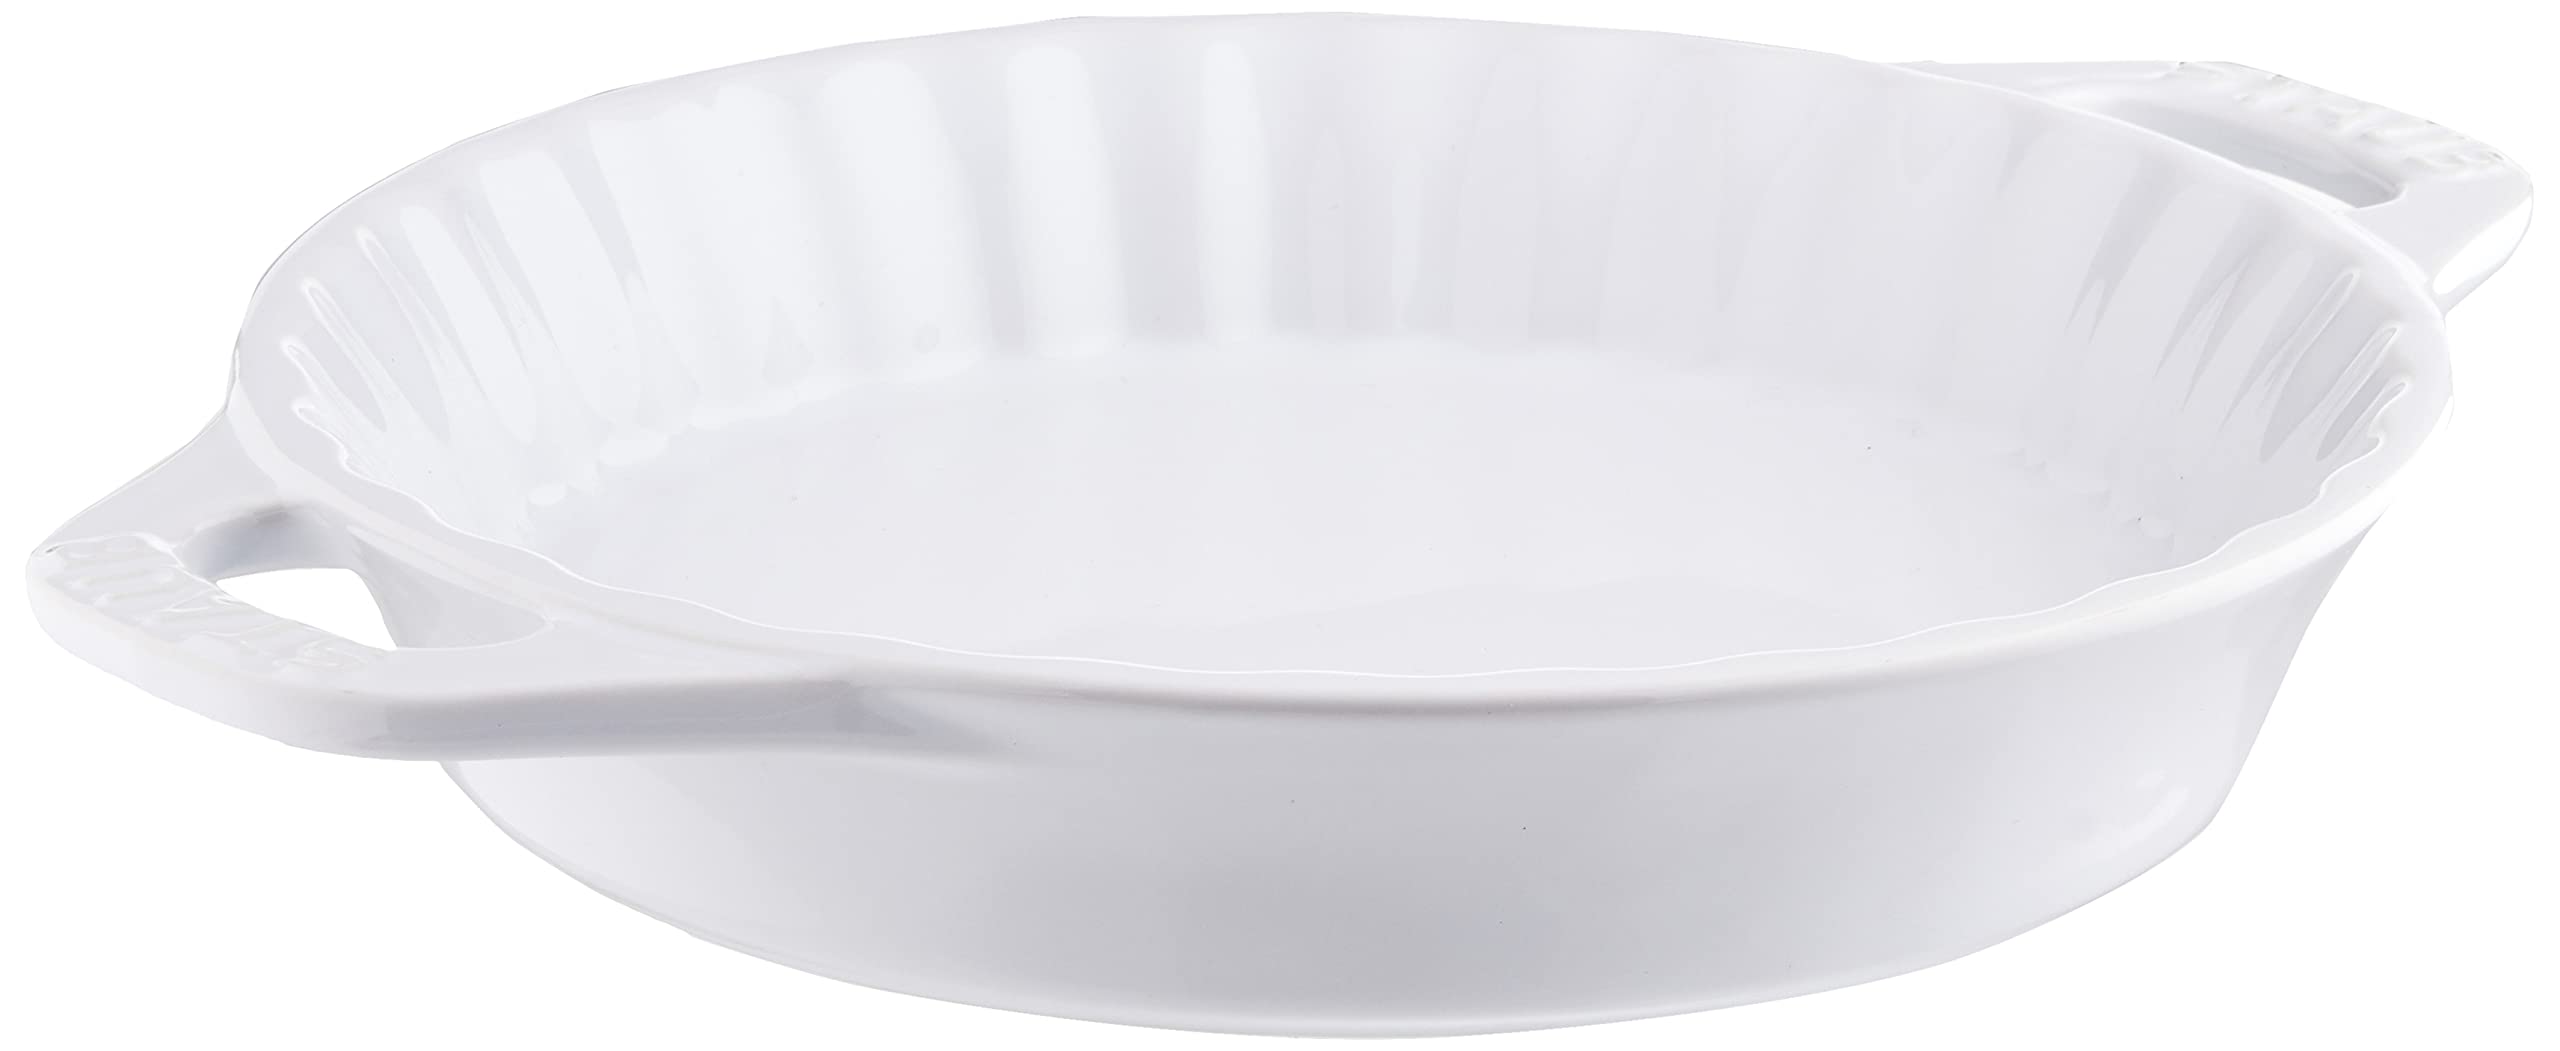 STAUB Ceramics Rectangular Baking Dish and Pie Dish Set, White